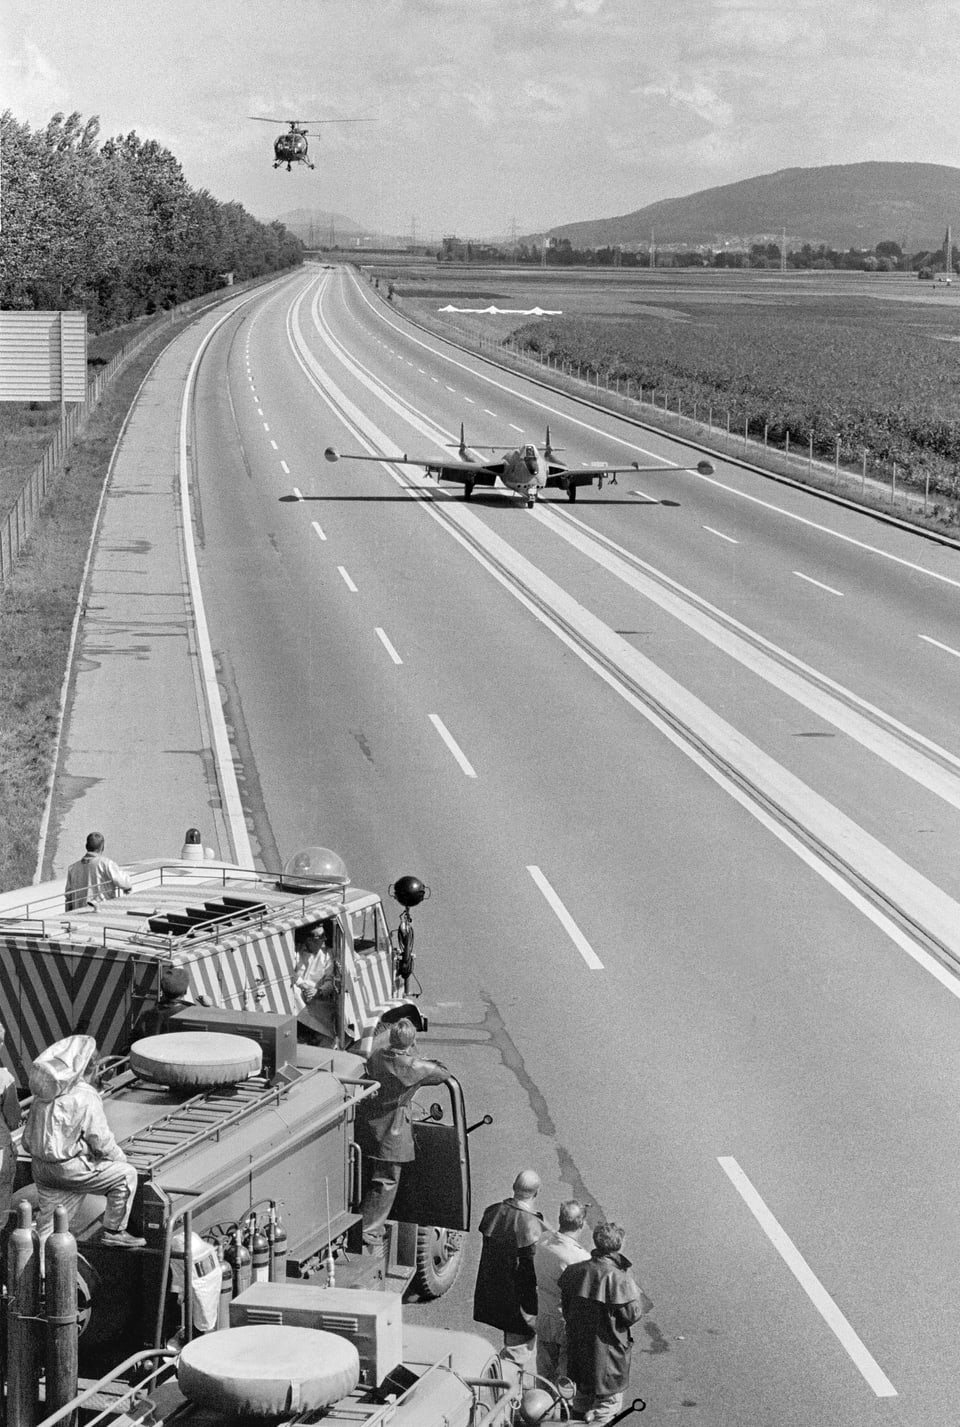 Militärjet rollt auf einer Autobahnstrecke; am Strassenrand sind Fahrzeuge platziert; darüber zirkelt ein Helikopter